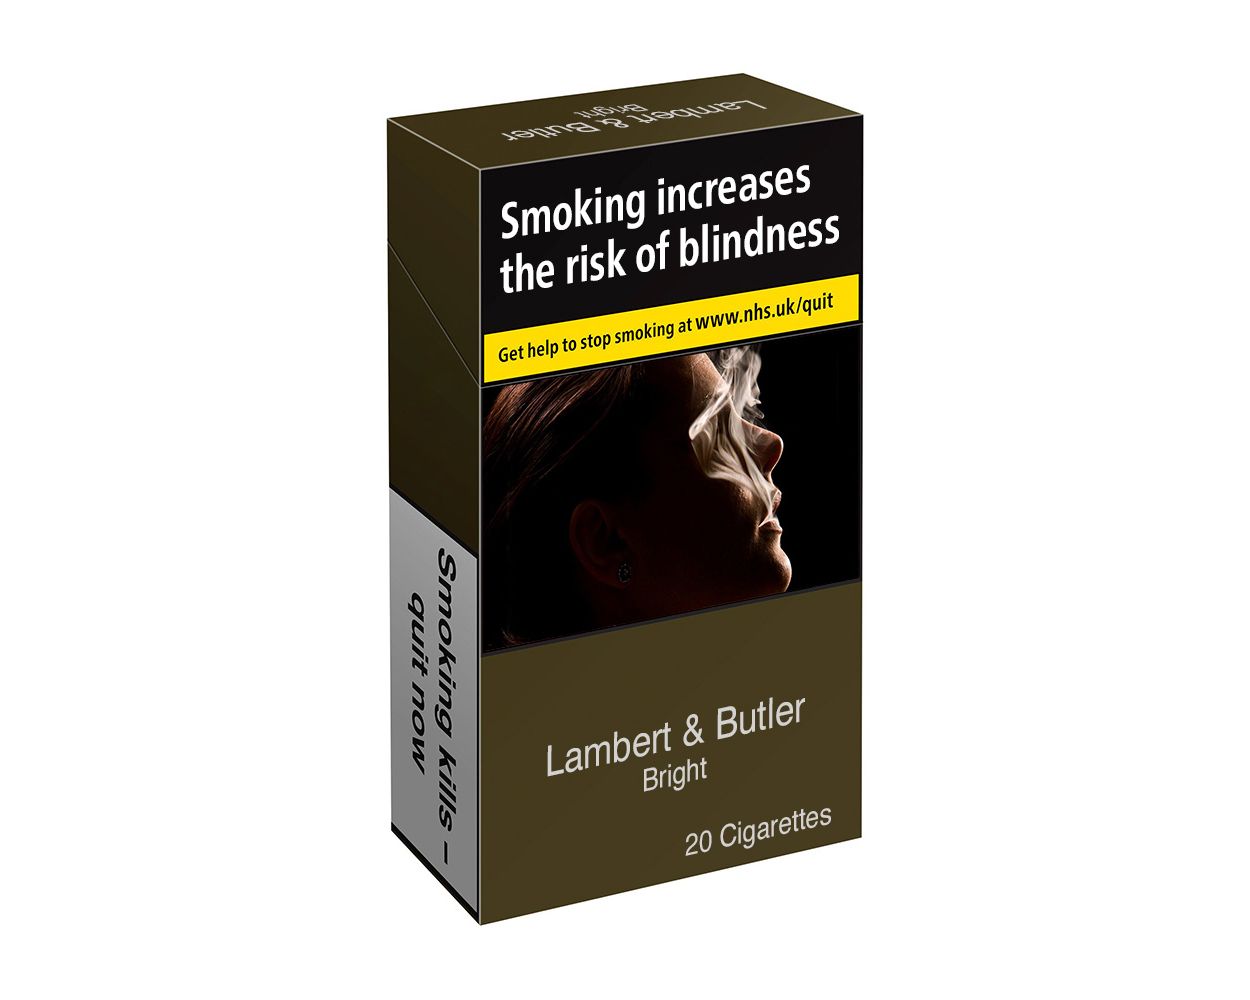 Lambert & Butler Bright King Size - 20 Cigarettes - Smoke-King